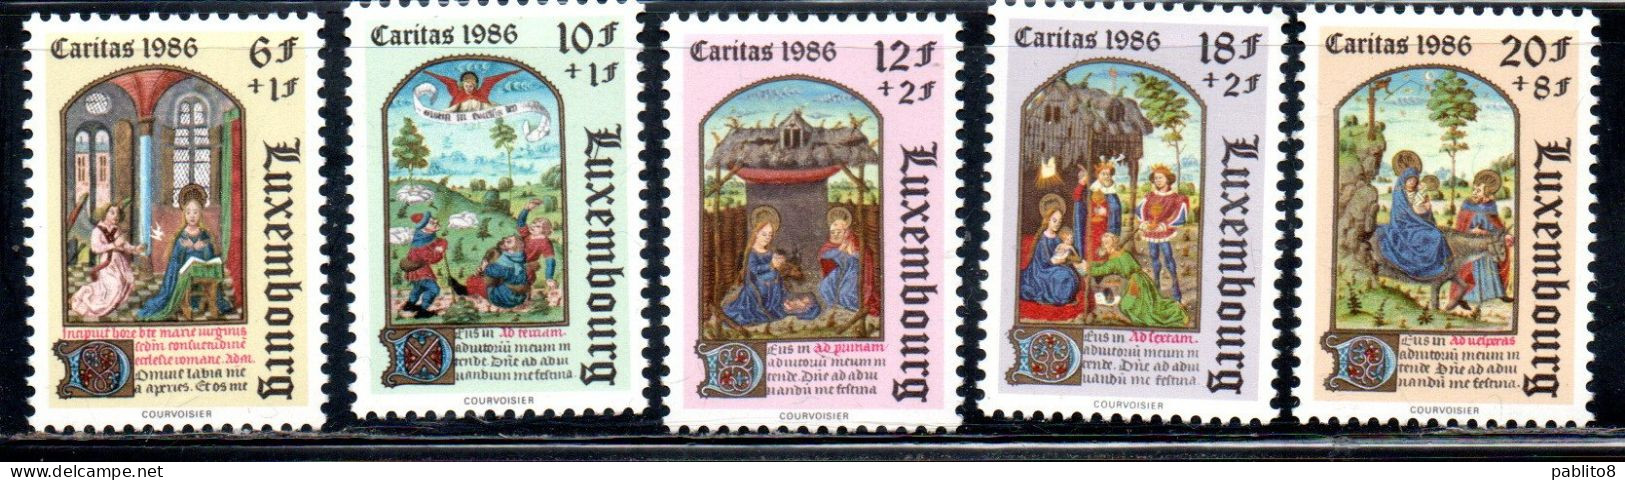 LUXEMBOURG LUSSEMBURGO 1986 CHRISTMAS NATALE NOEL WEIHNACHTEN NAVIDAD COMPLETE SET SERIE COMPLETA MNH - Unused Stamps